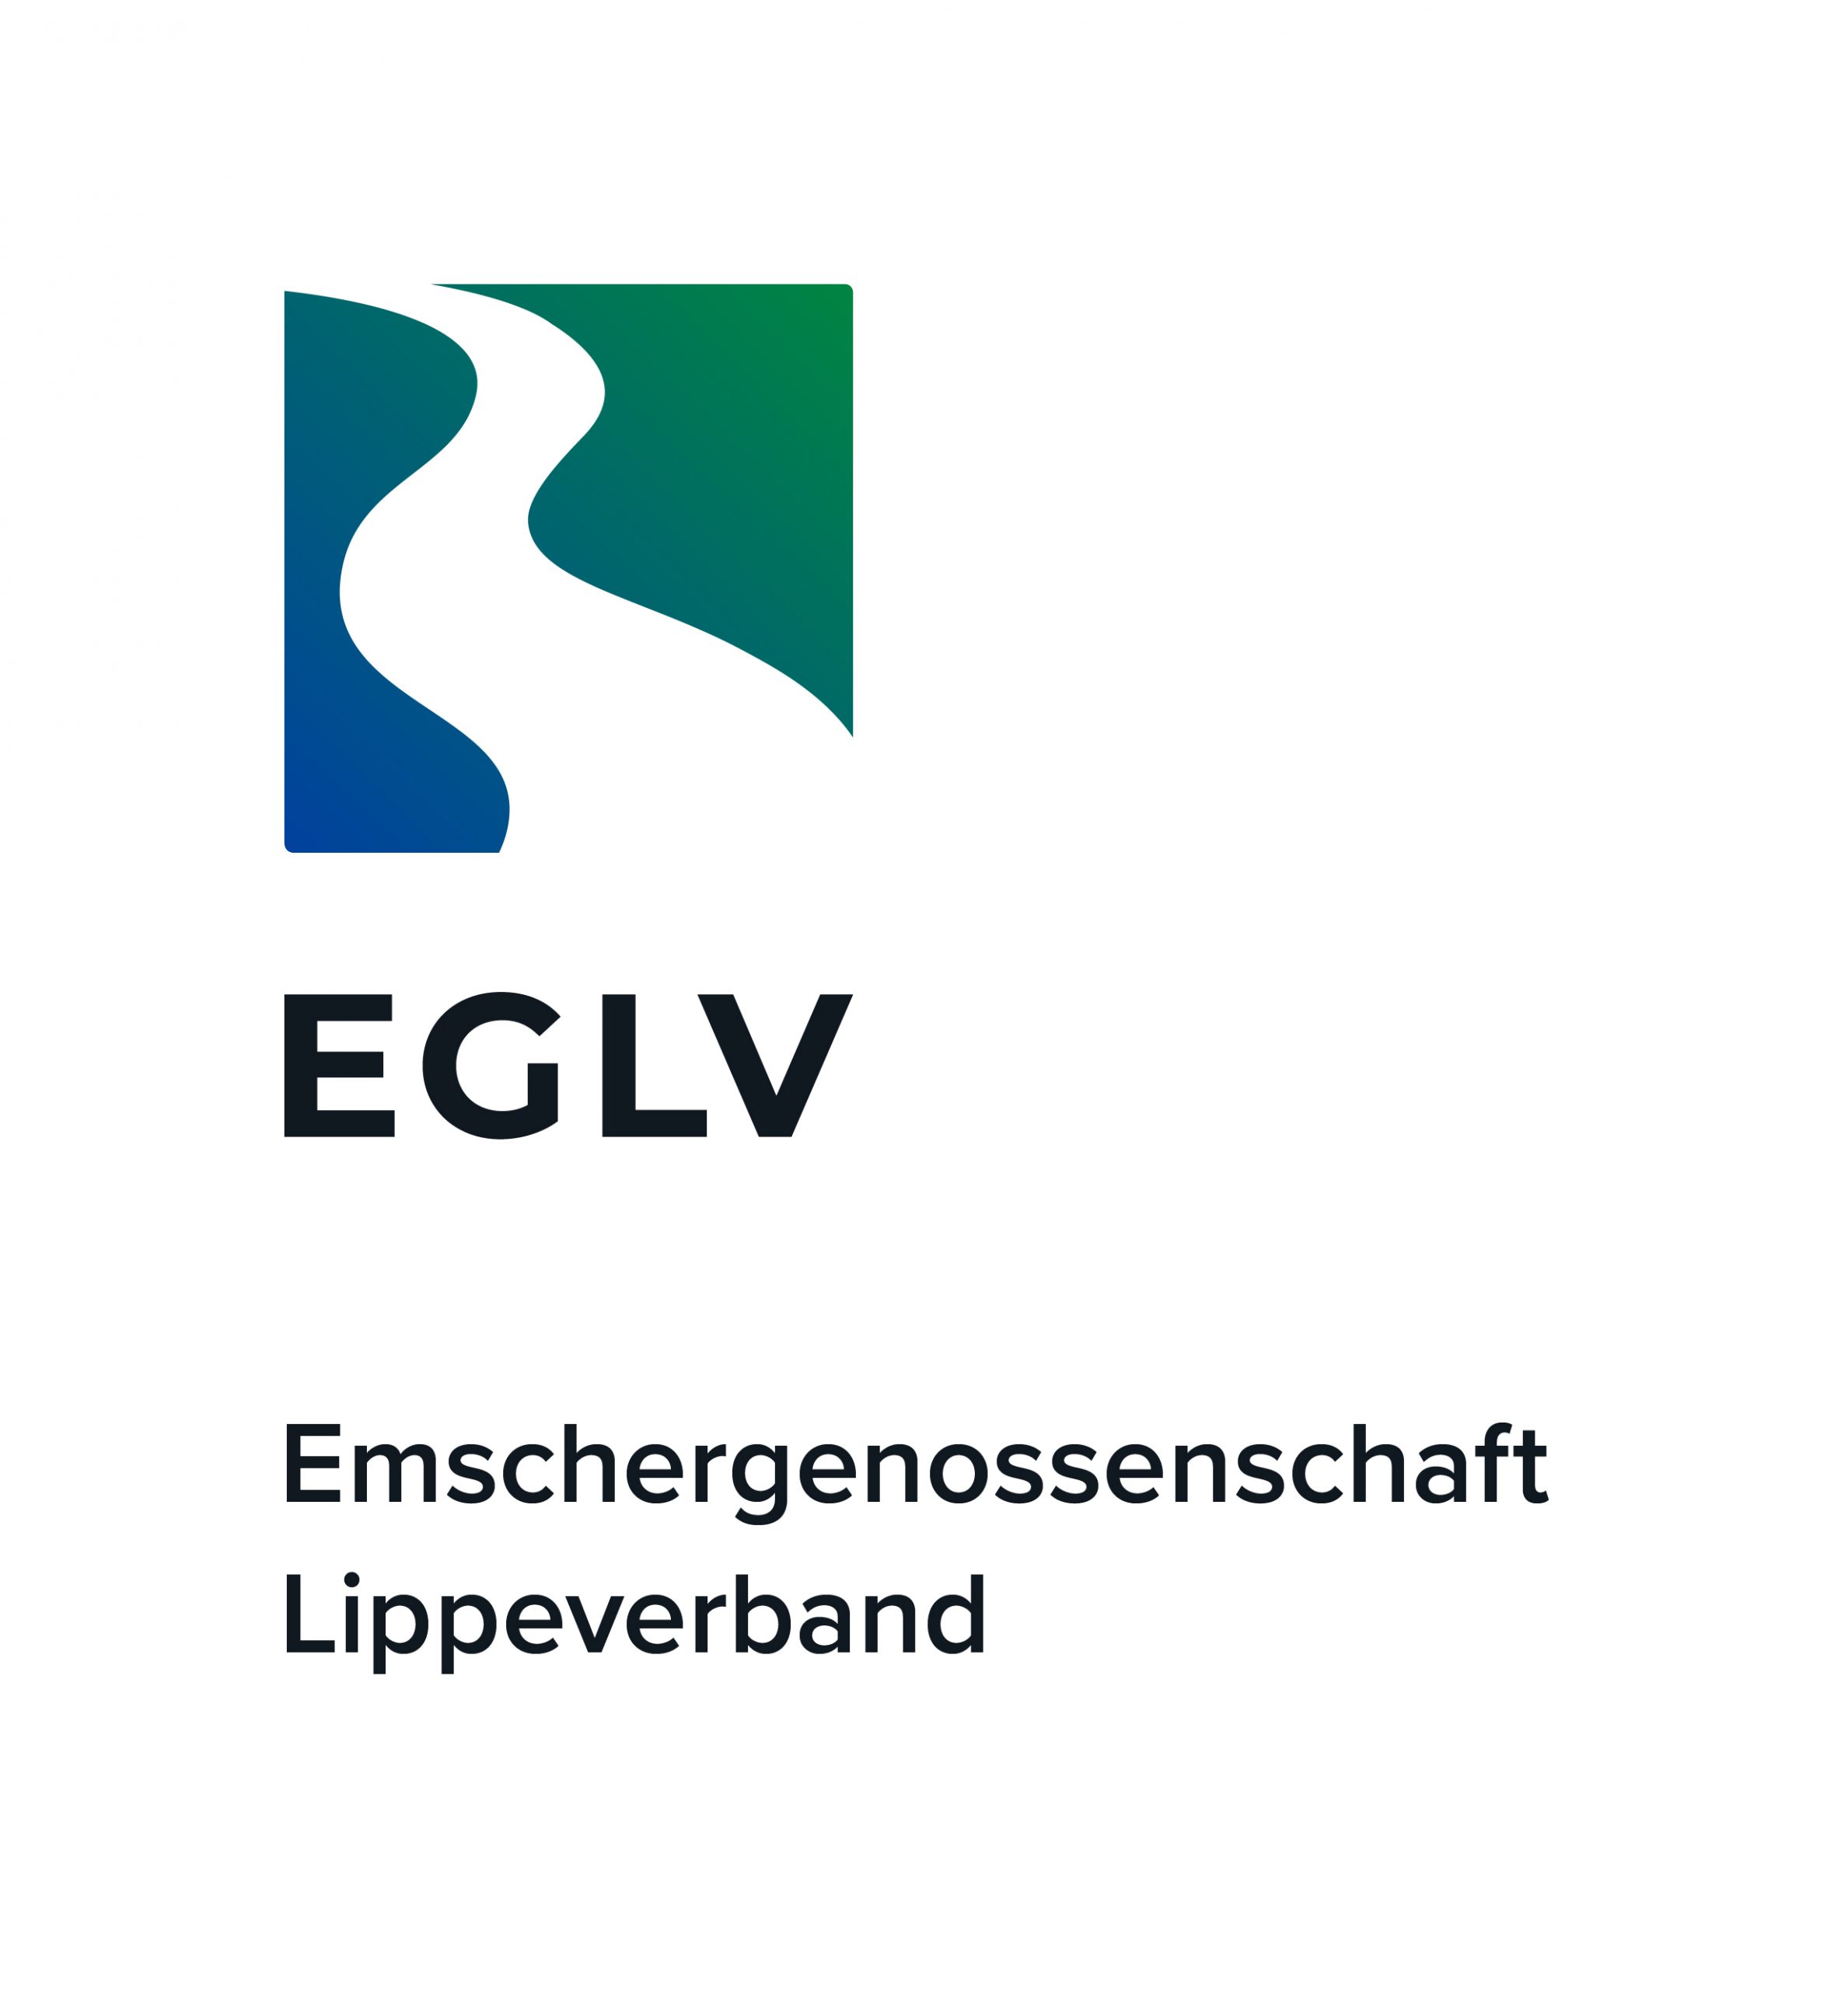 1-EGLV_Logo_rgb_Verlauf-10-scaled-1